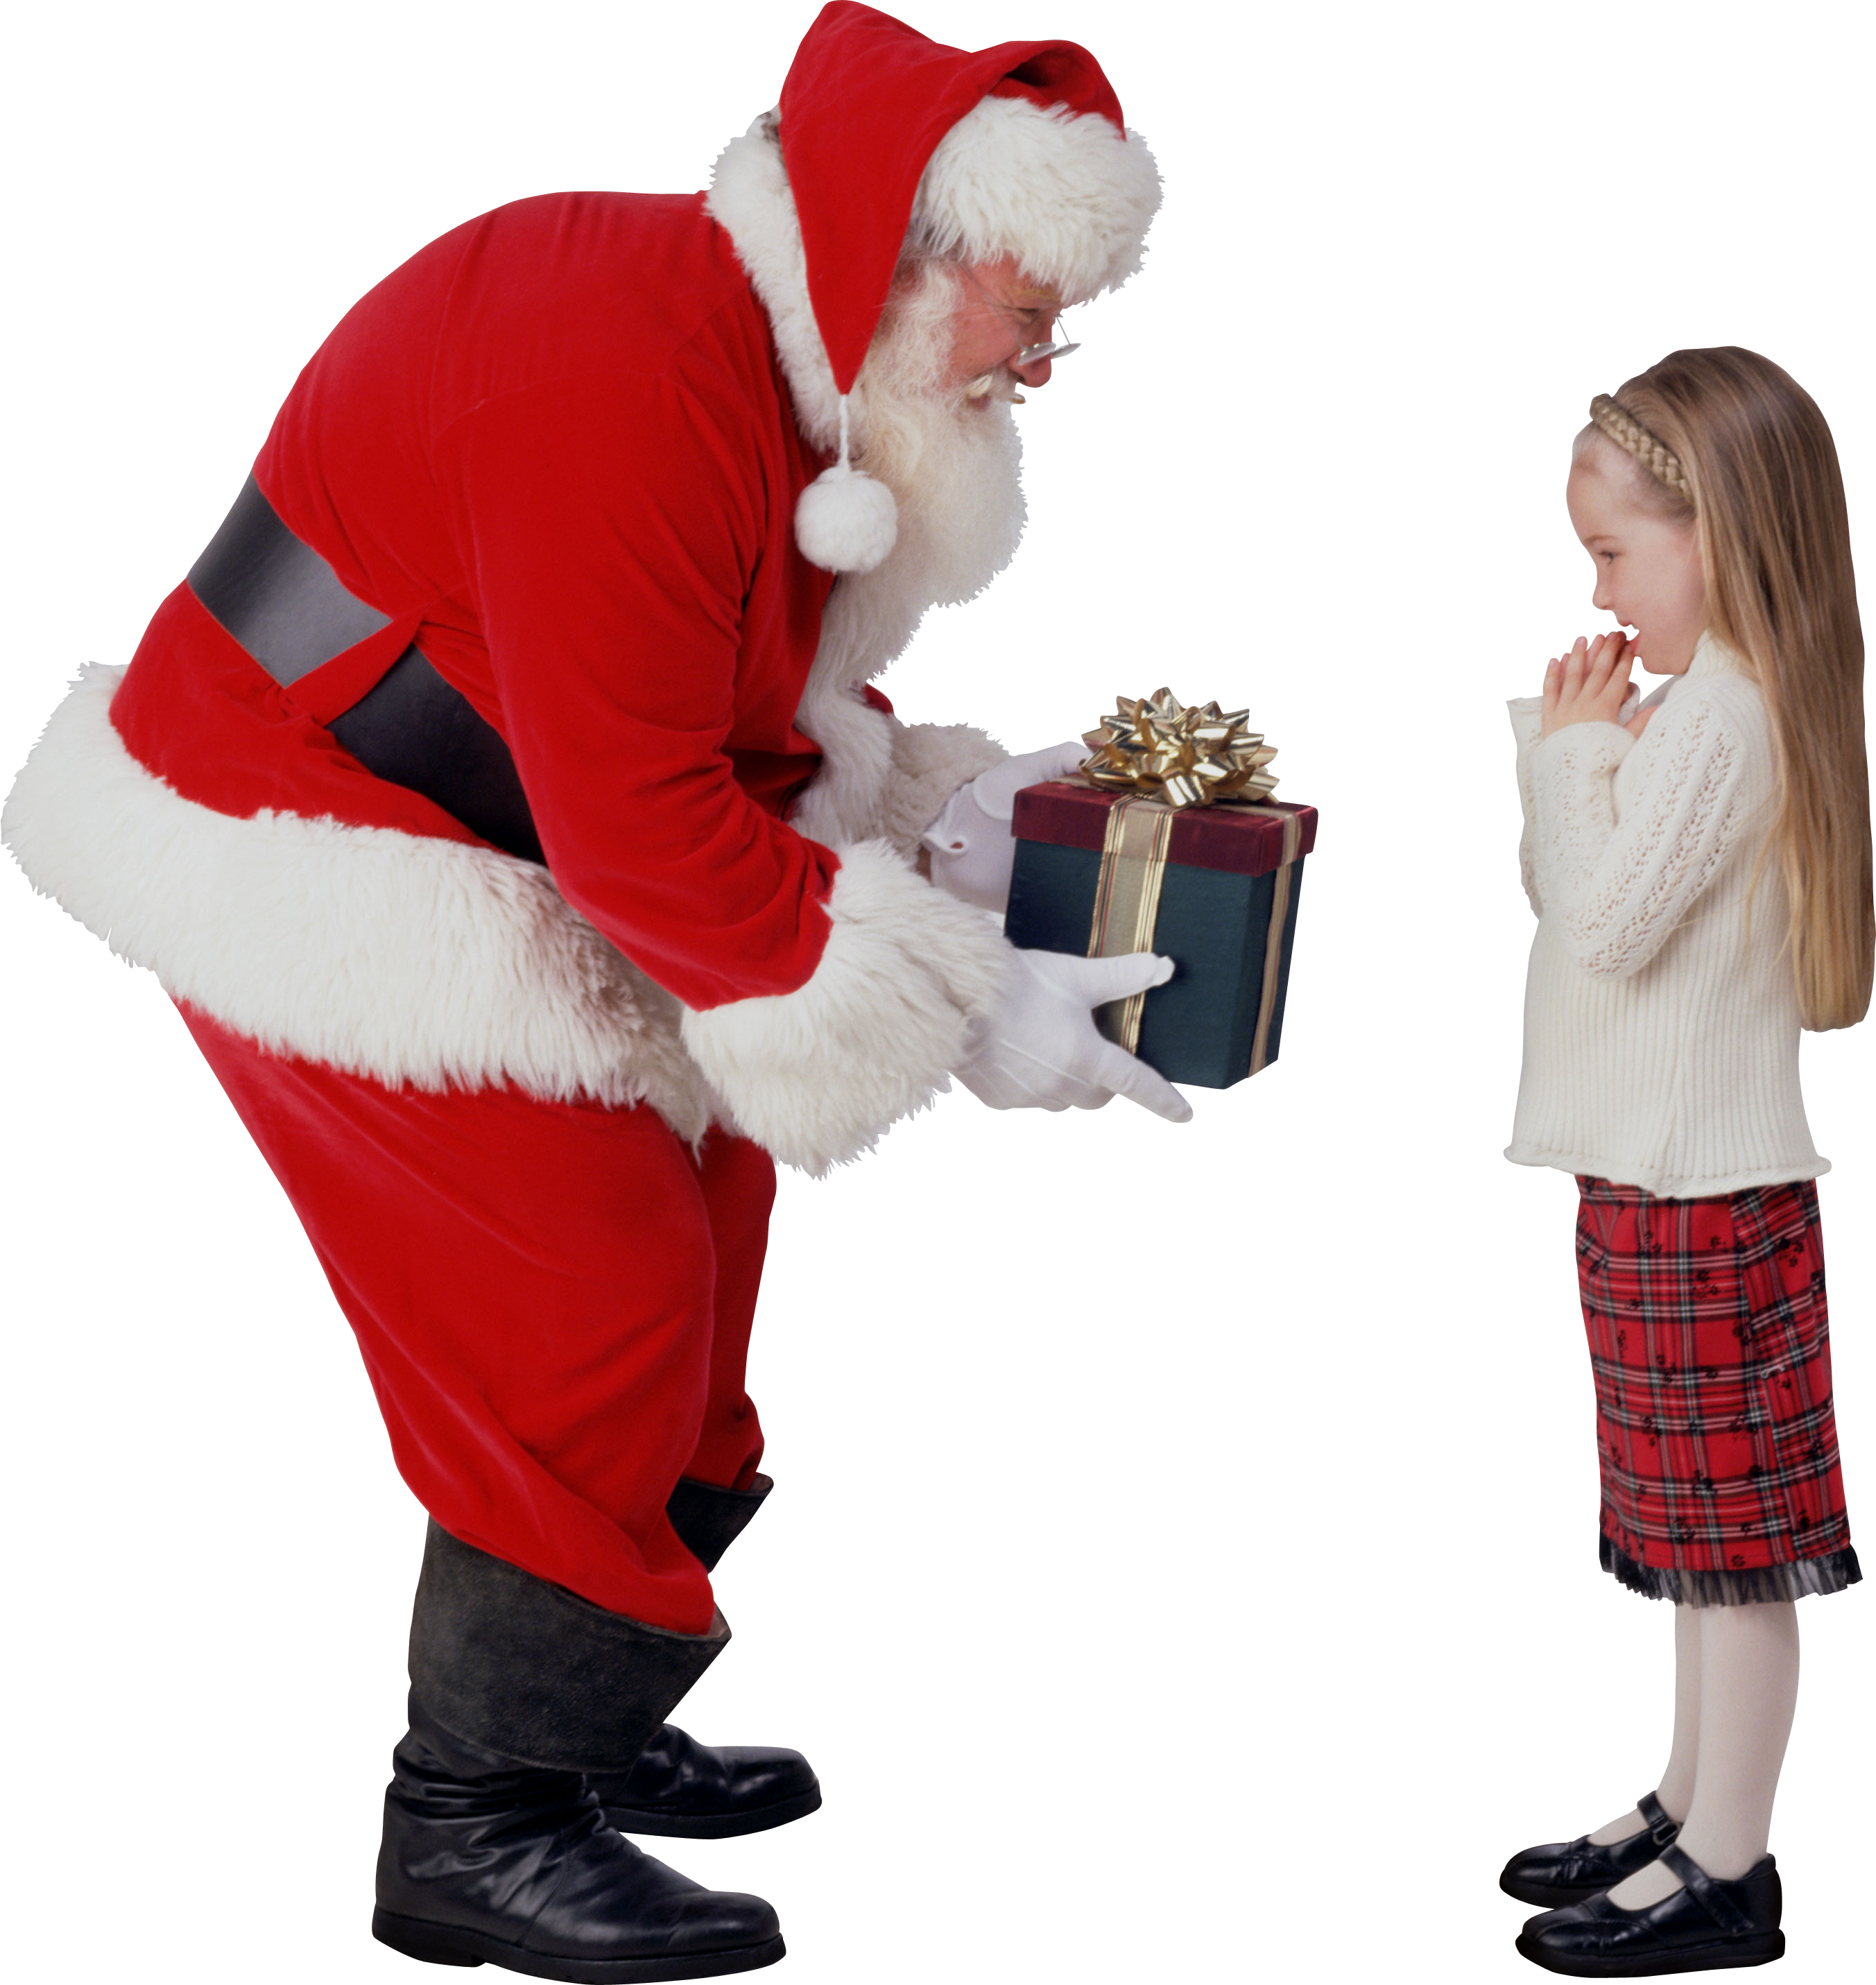 Дед мороз подарил подарок. Дед Мороз дарит подарки. Дед Мороз дарит подарки детям. Санта дарит подарки. Подарки Деда Мороза.